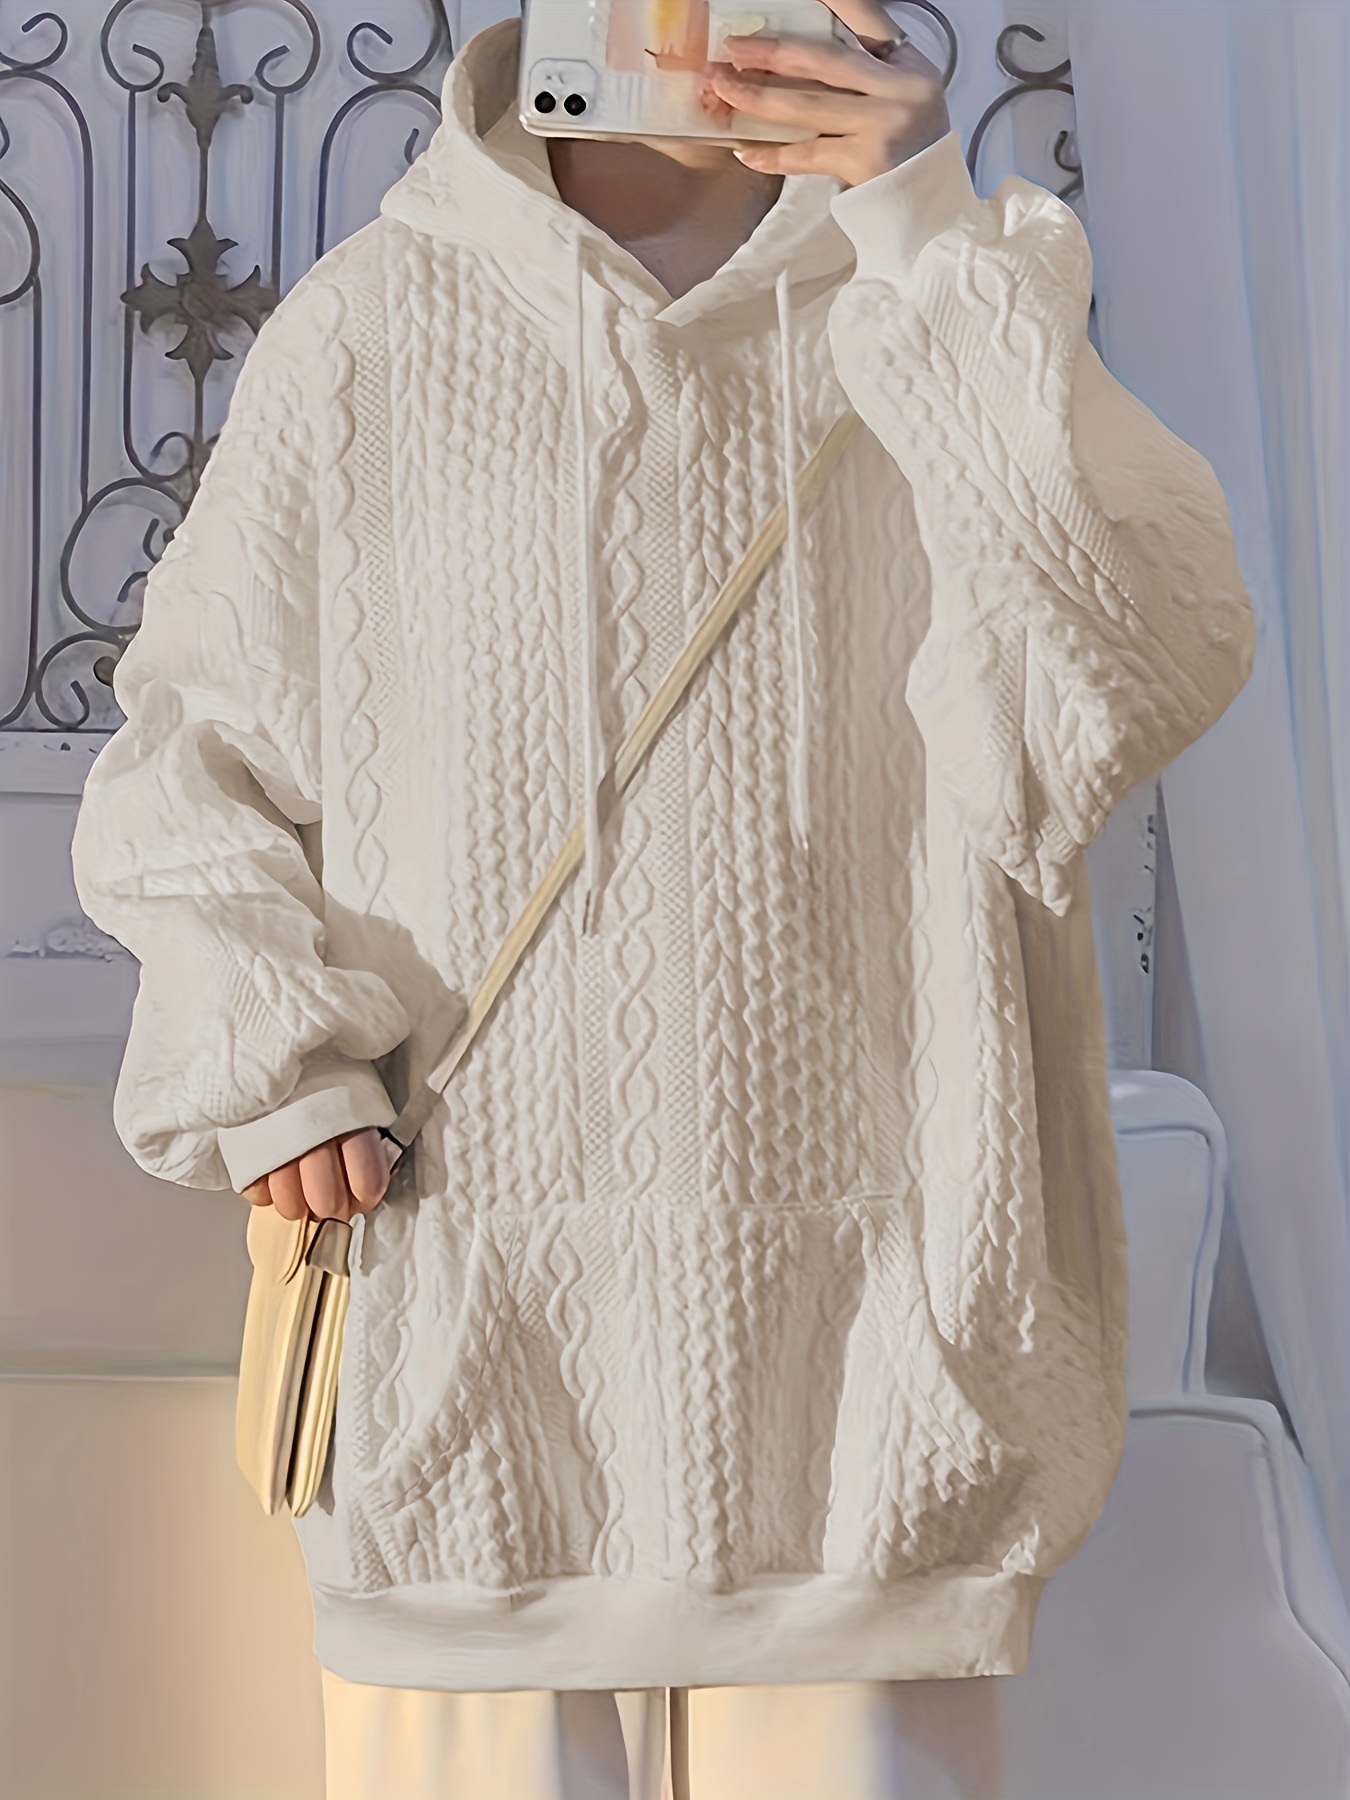 solid textured kangaroo pocket hoodie casual long sleeve drawstring hoodies sweatshirt womens clothing details 20